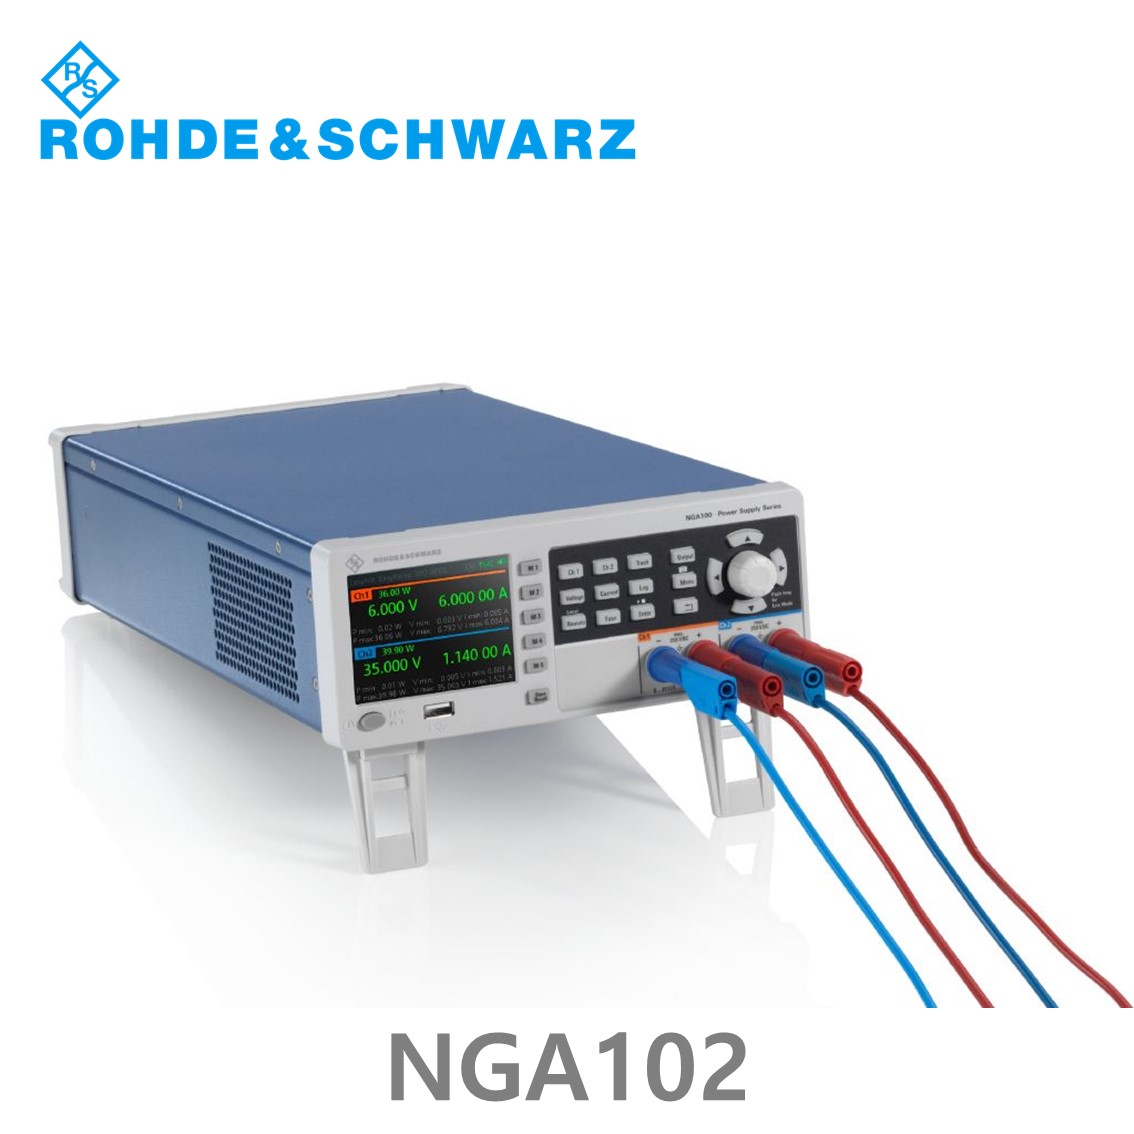 [ 로데슈바르즈 ] NGA102  2채널/80W, 0V~35V, 0A~6A DC파워서플라이, DC전원공급장치 (5601.8002.04)